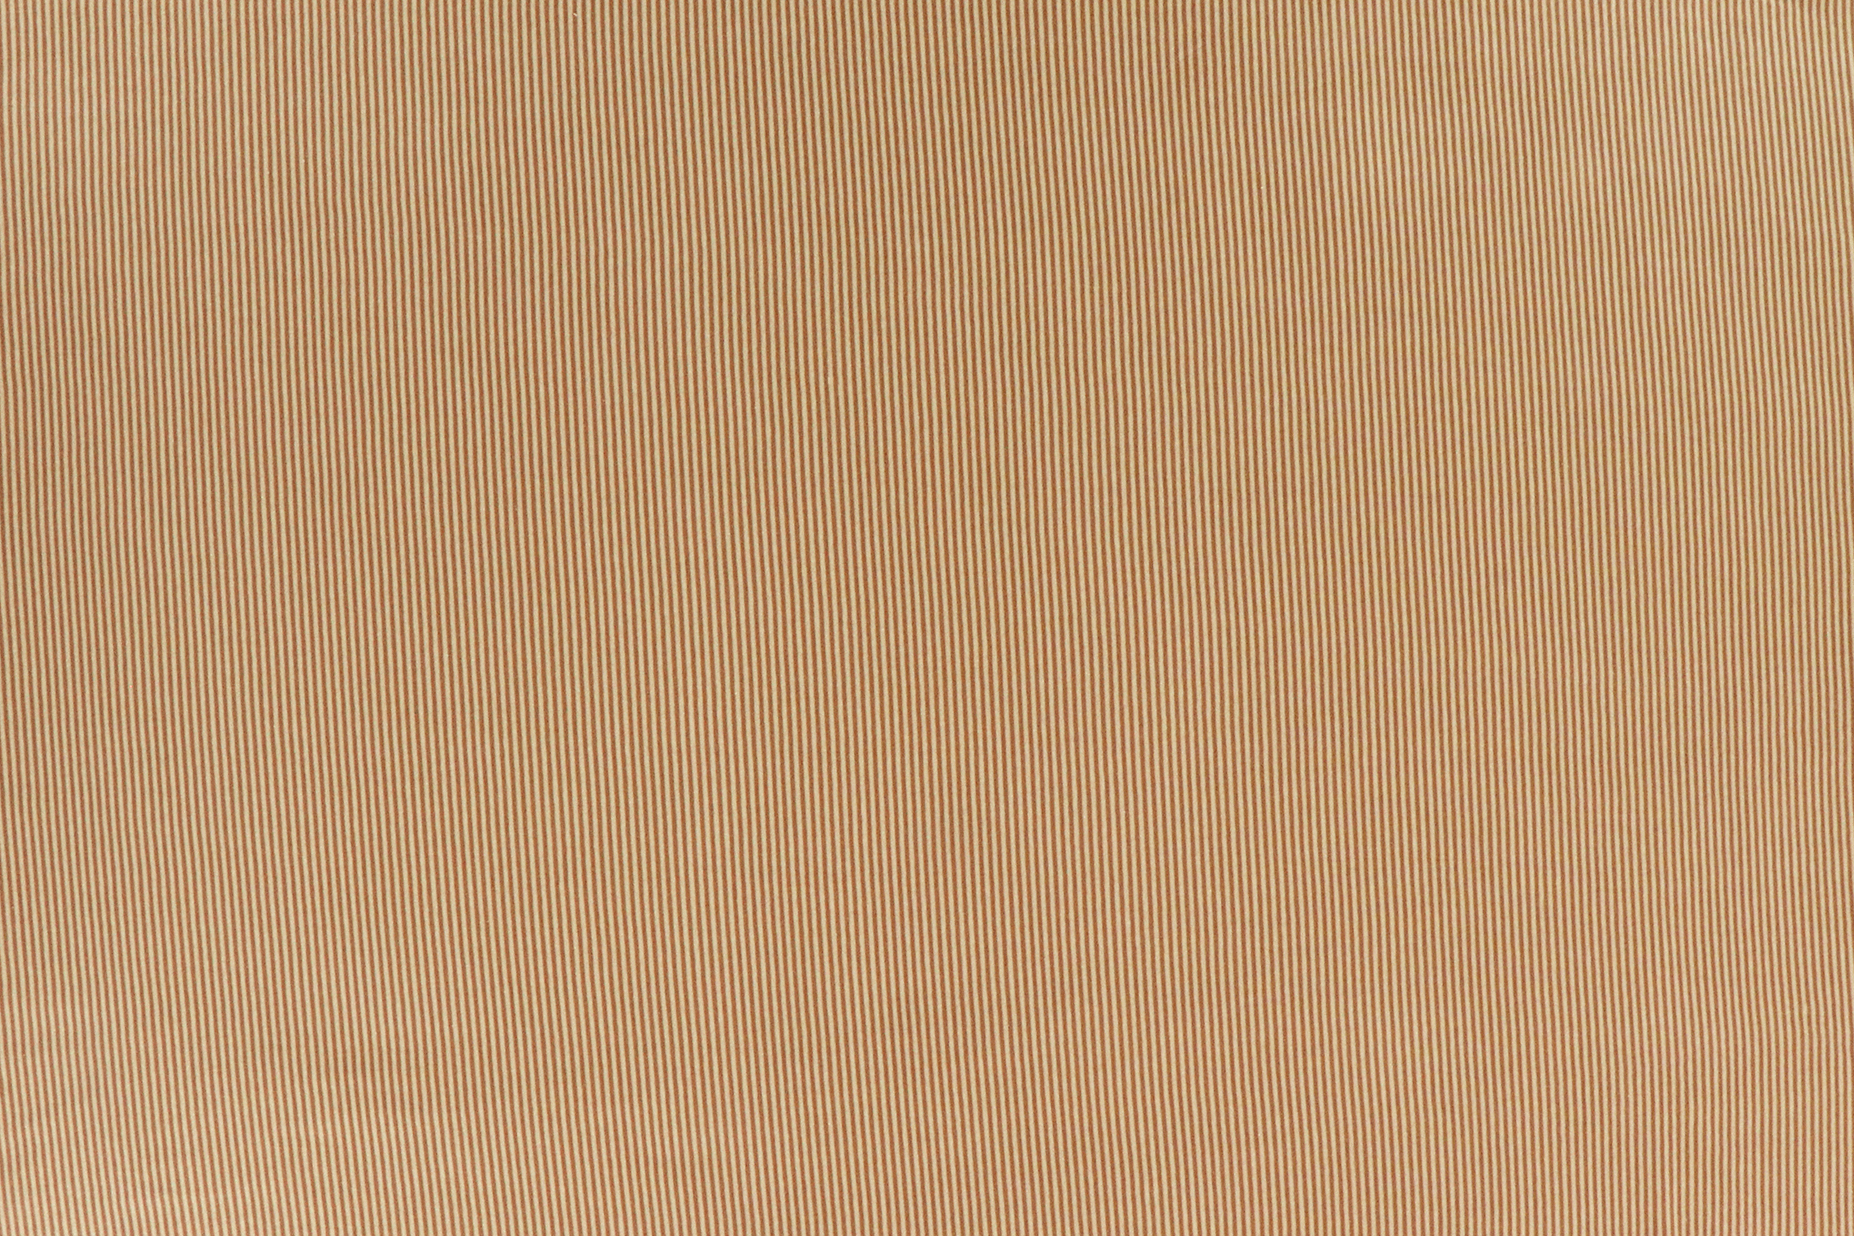 Jersey di cotone, strisce in sabbia e marrone